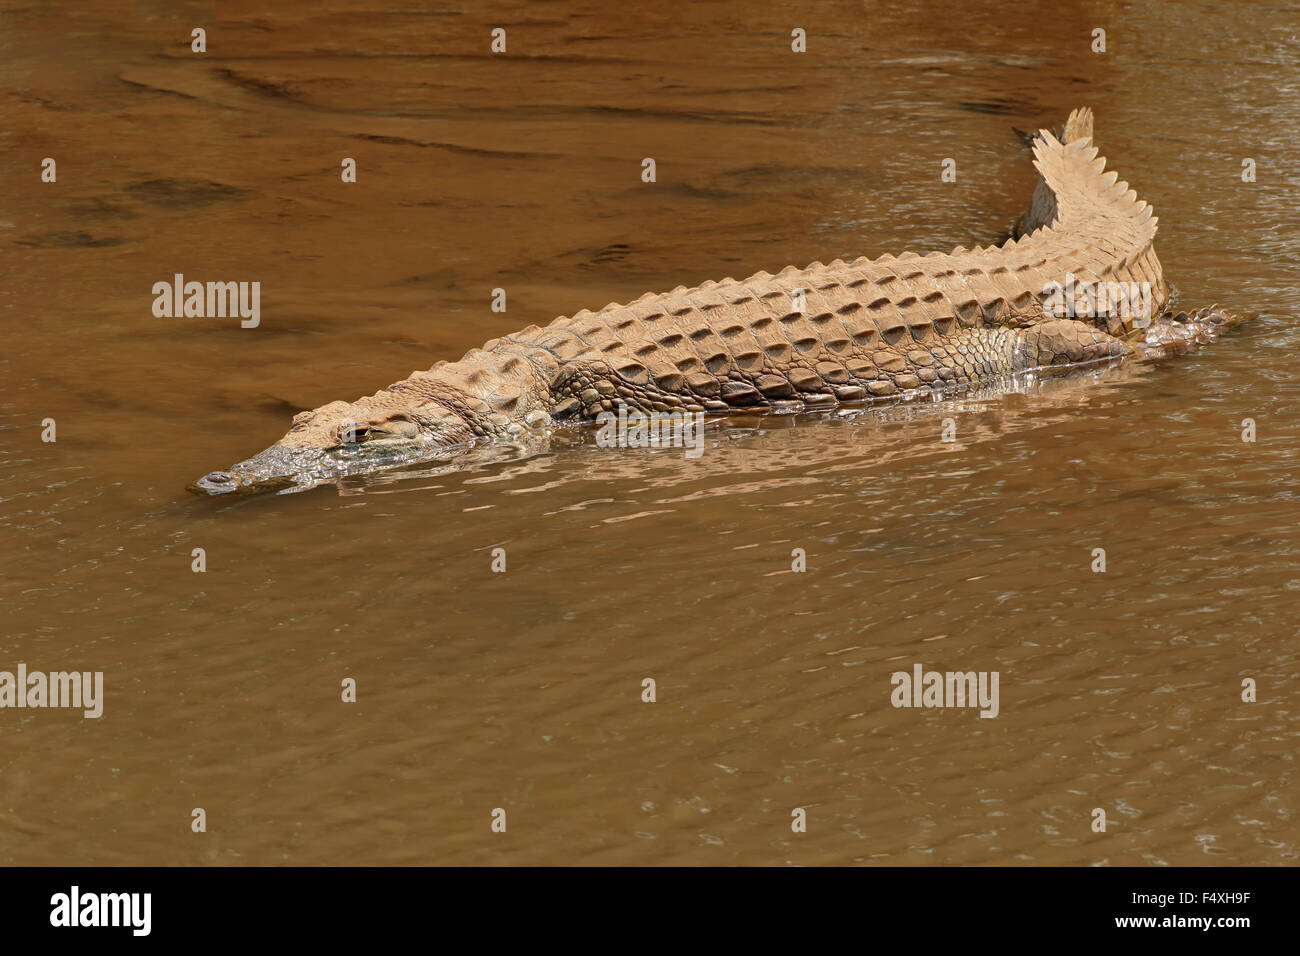 Un crocodile du Nil (Crocodylus niloticus) se prélassent dans l'eau peu profonde, Kruger National Park, Afrique du Sud Banque D'Images